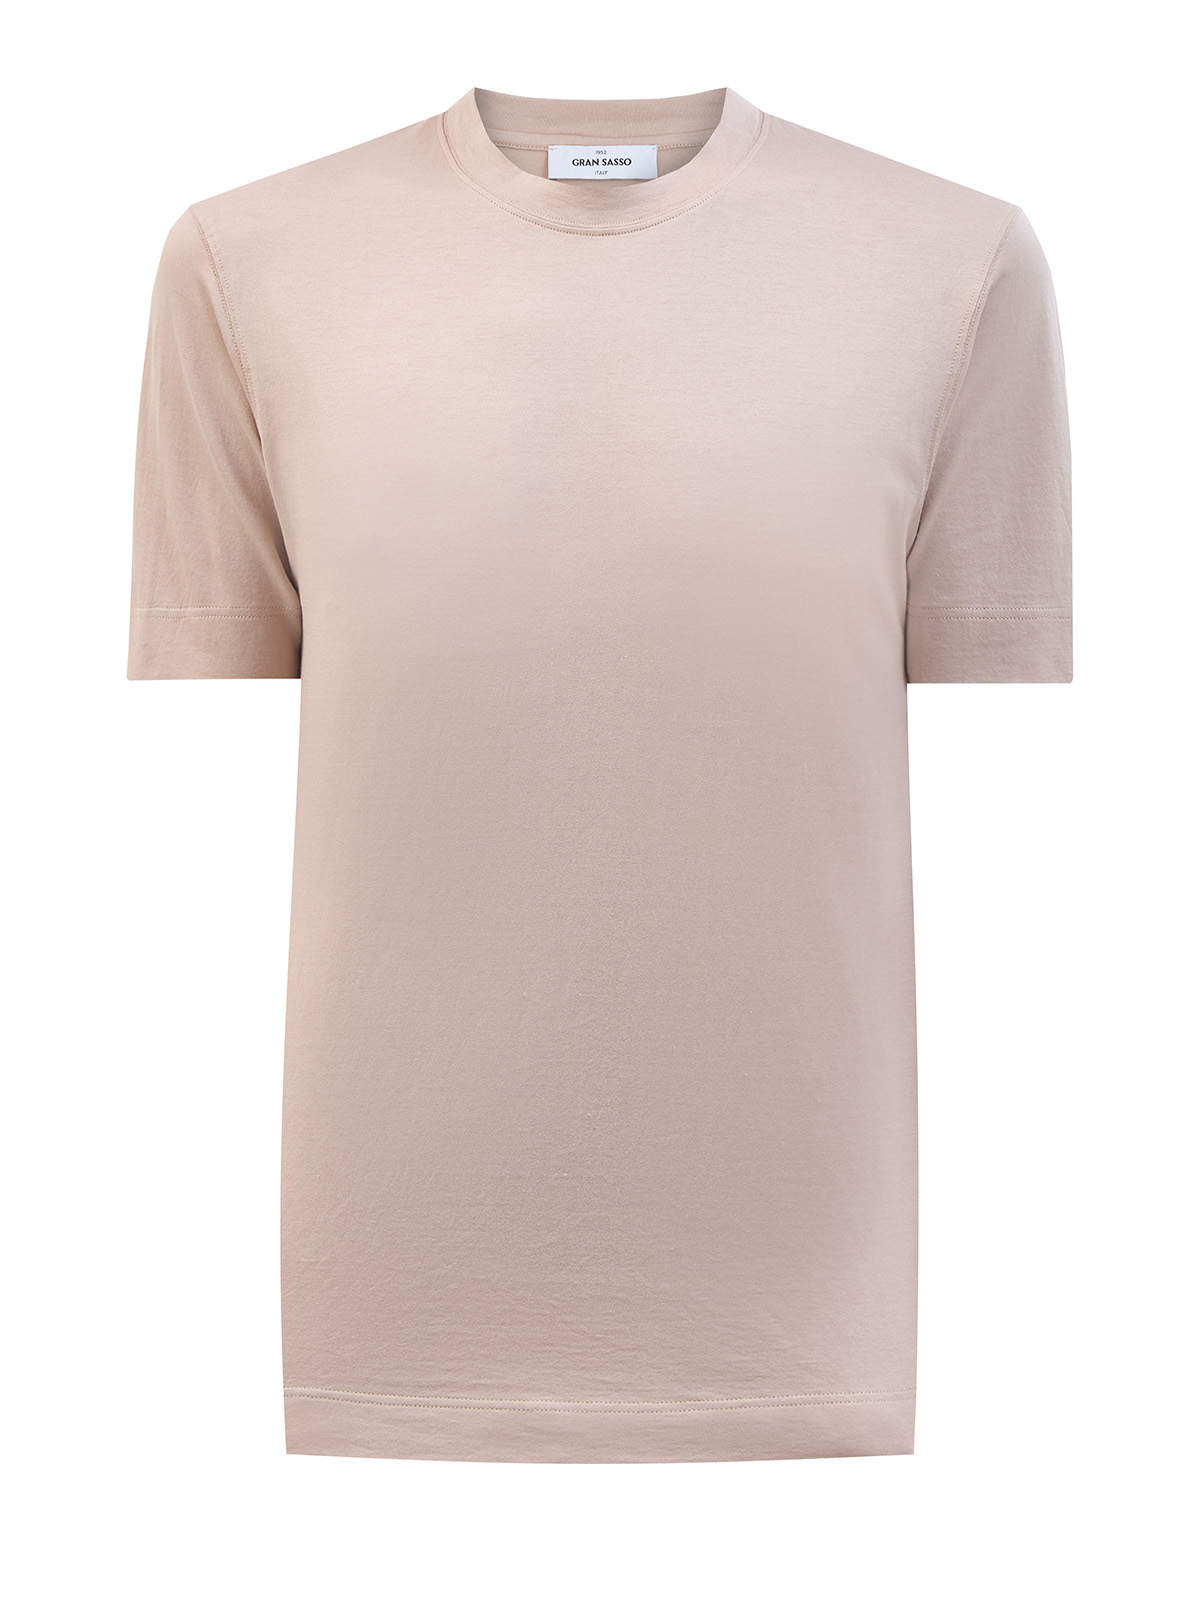 Хлопковая футболка из гладкого джерси с фирменной нашивкой GRAN SASSO, цвет бежевый, размер 48;50;52;54;56;58;60